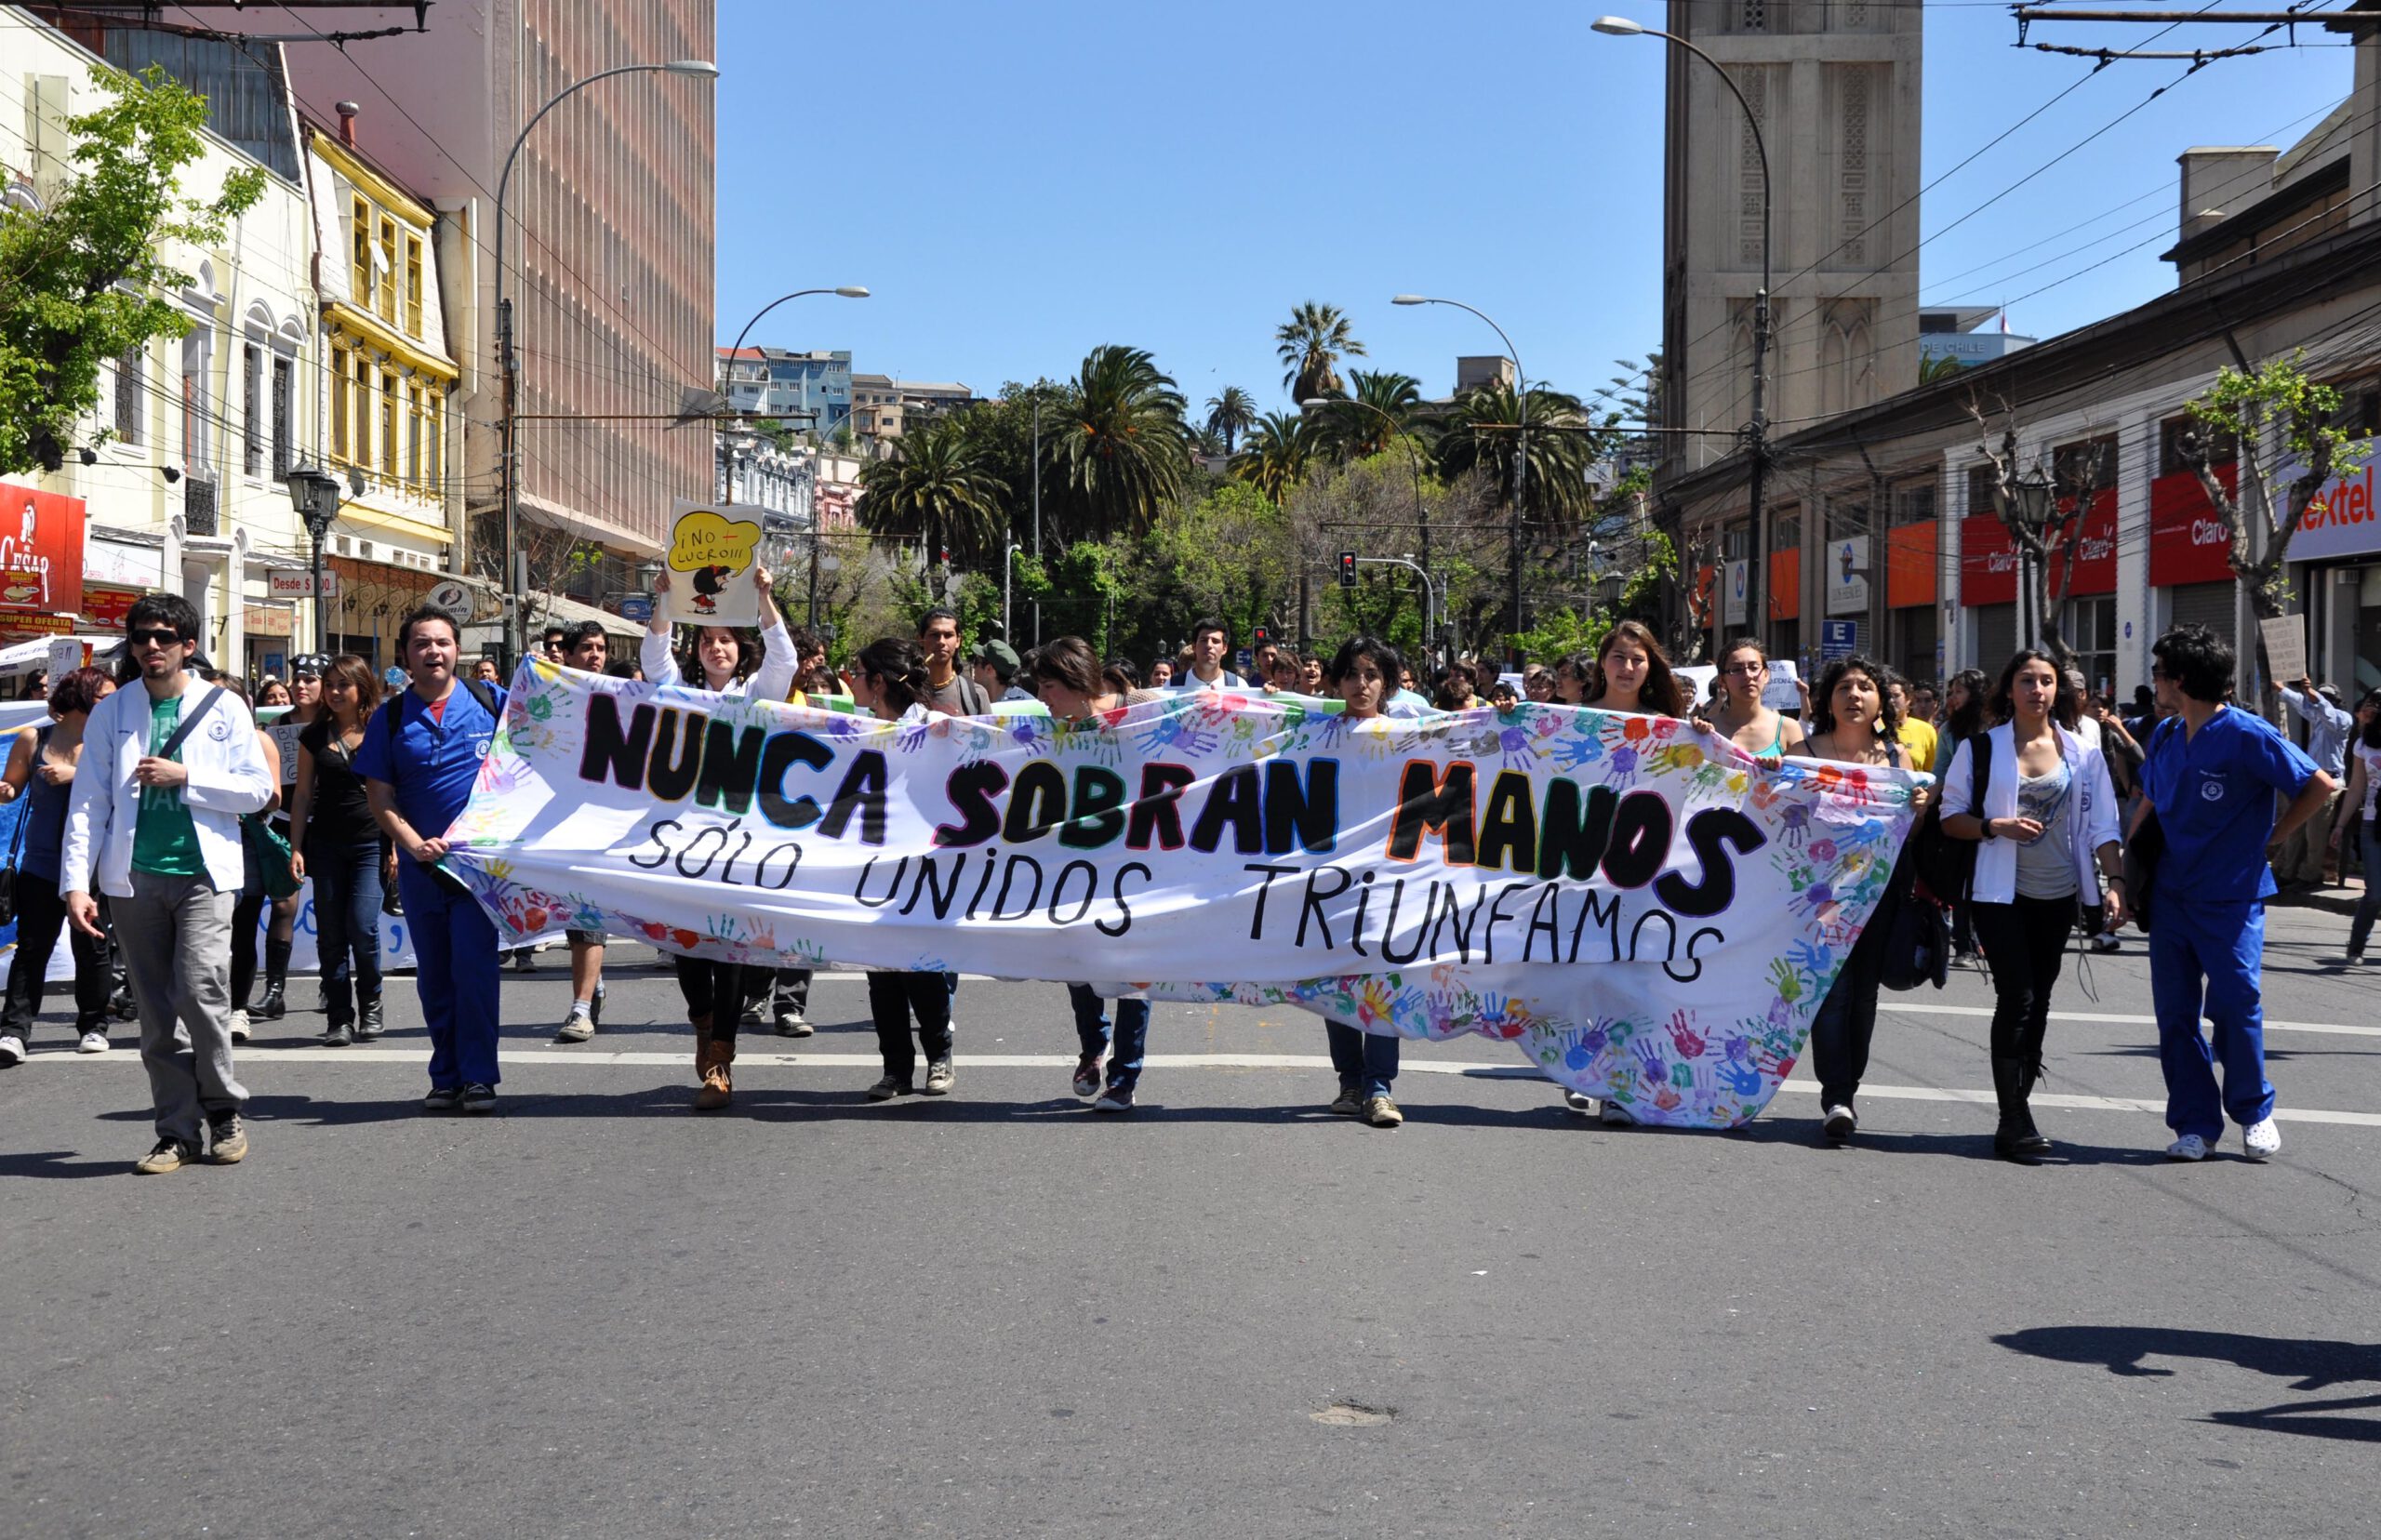 #5 Trotz alledem: Gewerkschaften uns Soziale Bewegungen in Lateinamerika